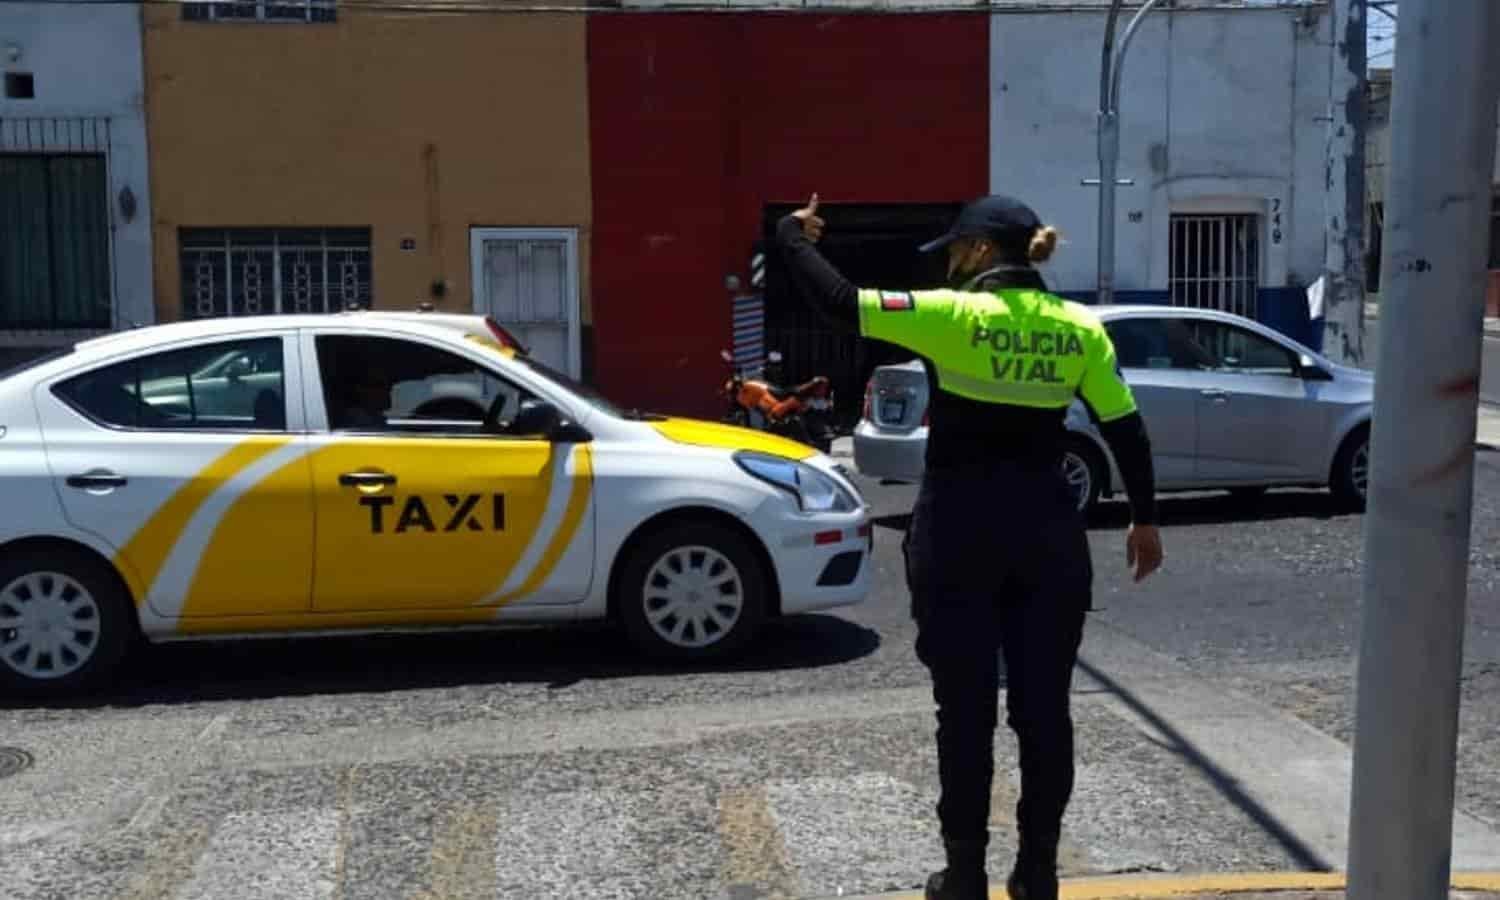  Policía Vial detuvo a 149 conductores durante semana santa 